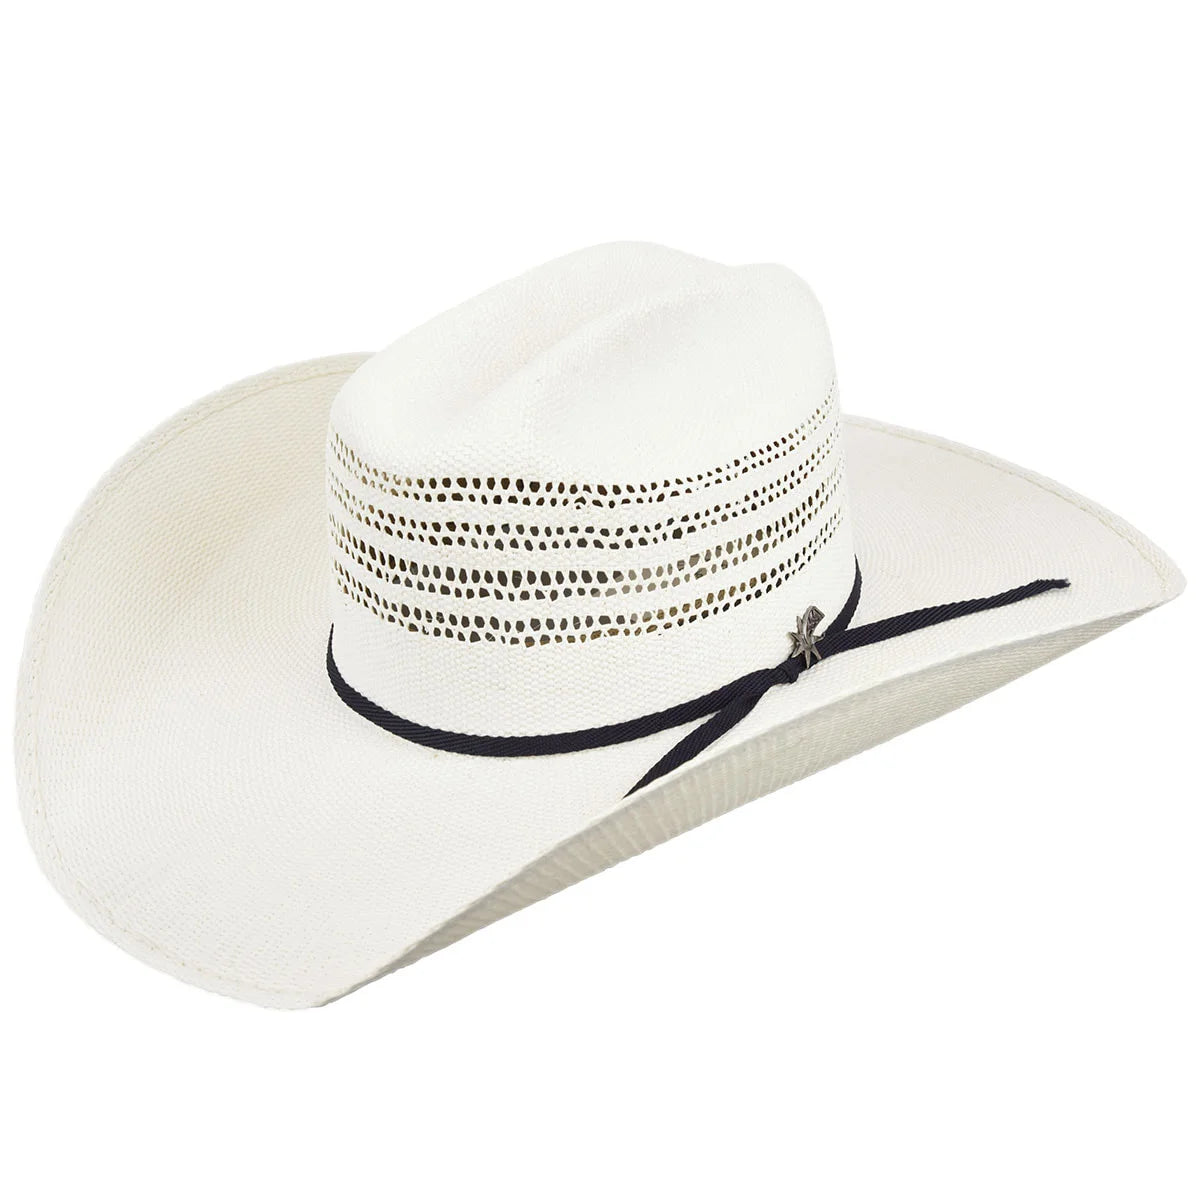 Bailey Caporal Western Straw Cowboy Hat